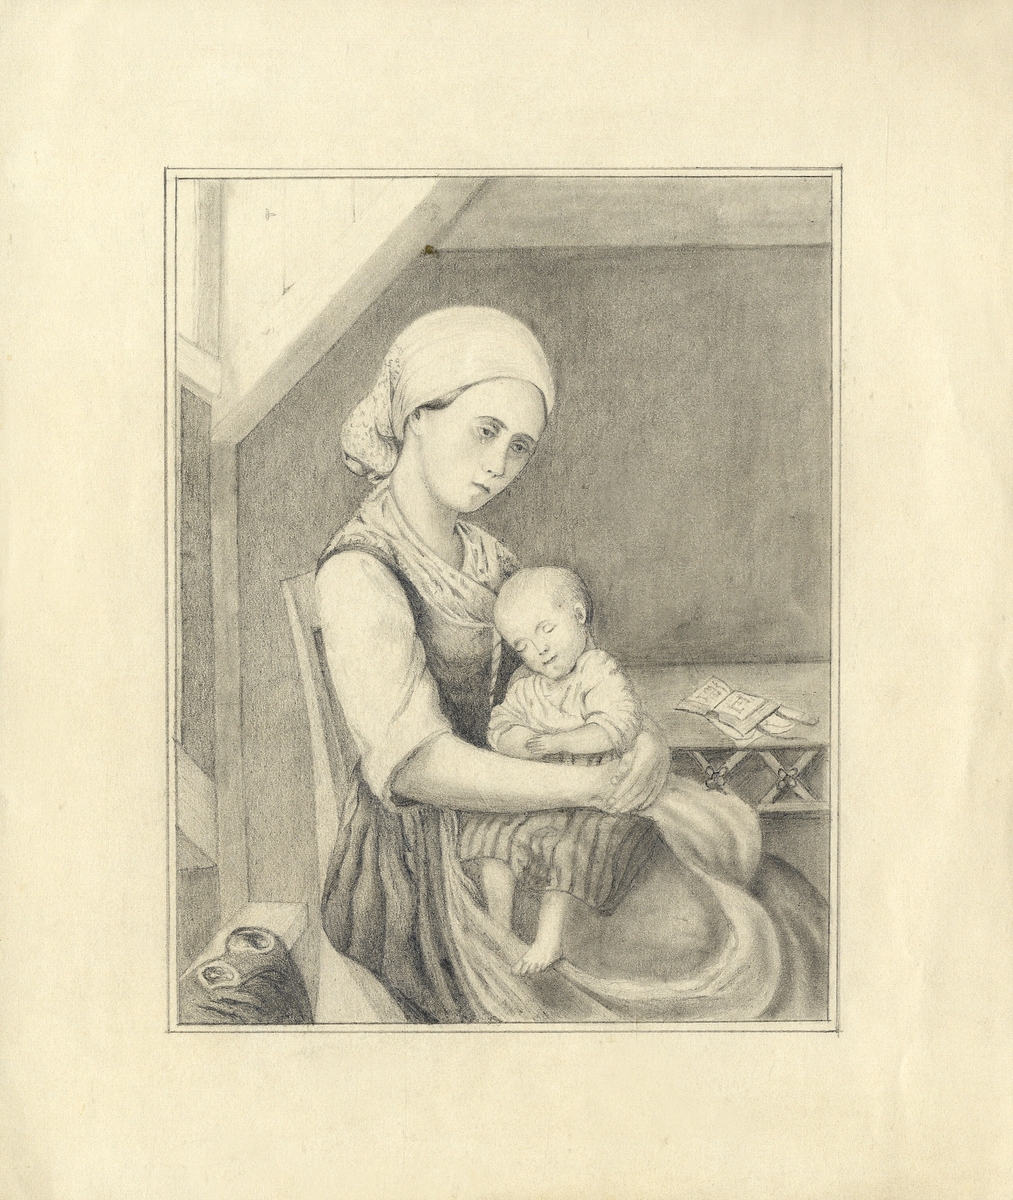 Skiss, blyerts. Studie av en kvinna i allmogedräkt med ett litet barn i famnen.
Knäbild, halvprofil.  

Inskrivet i huvudbok 1937.